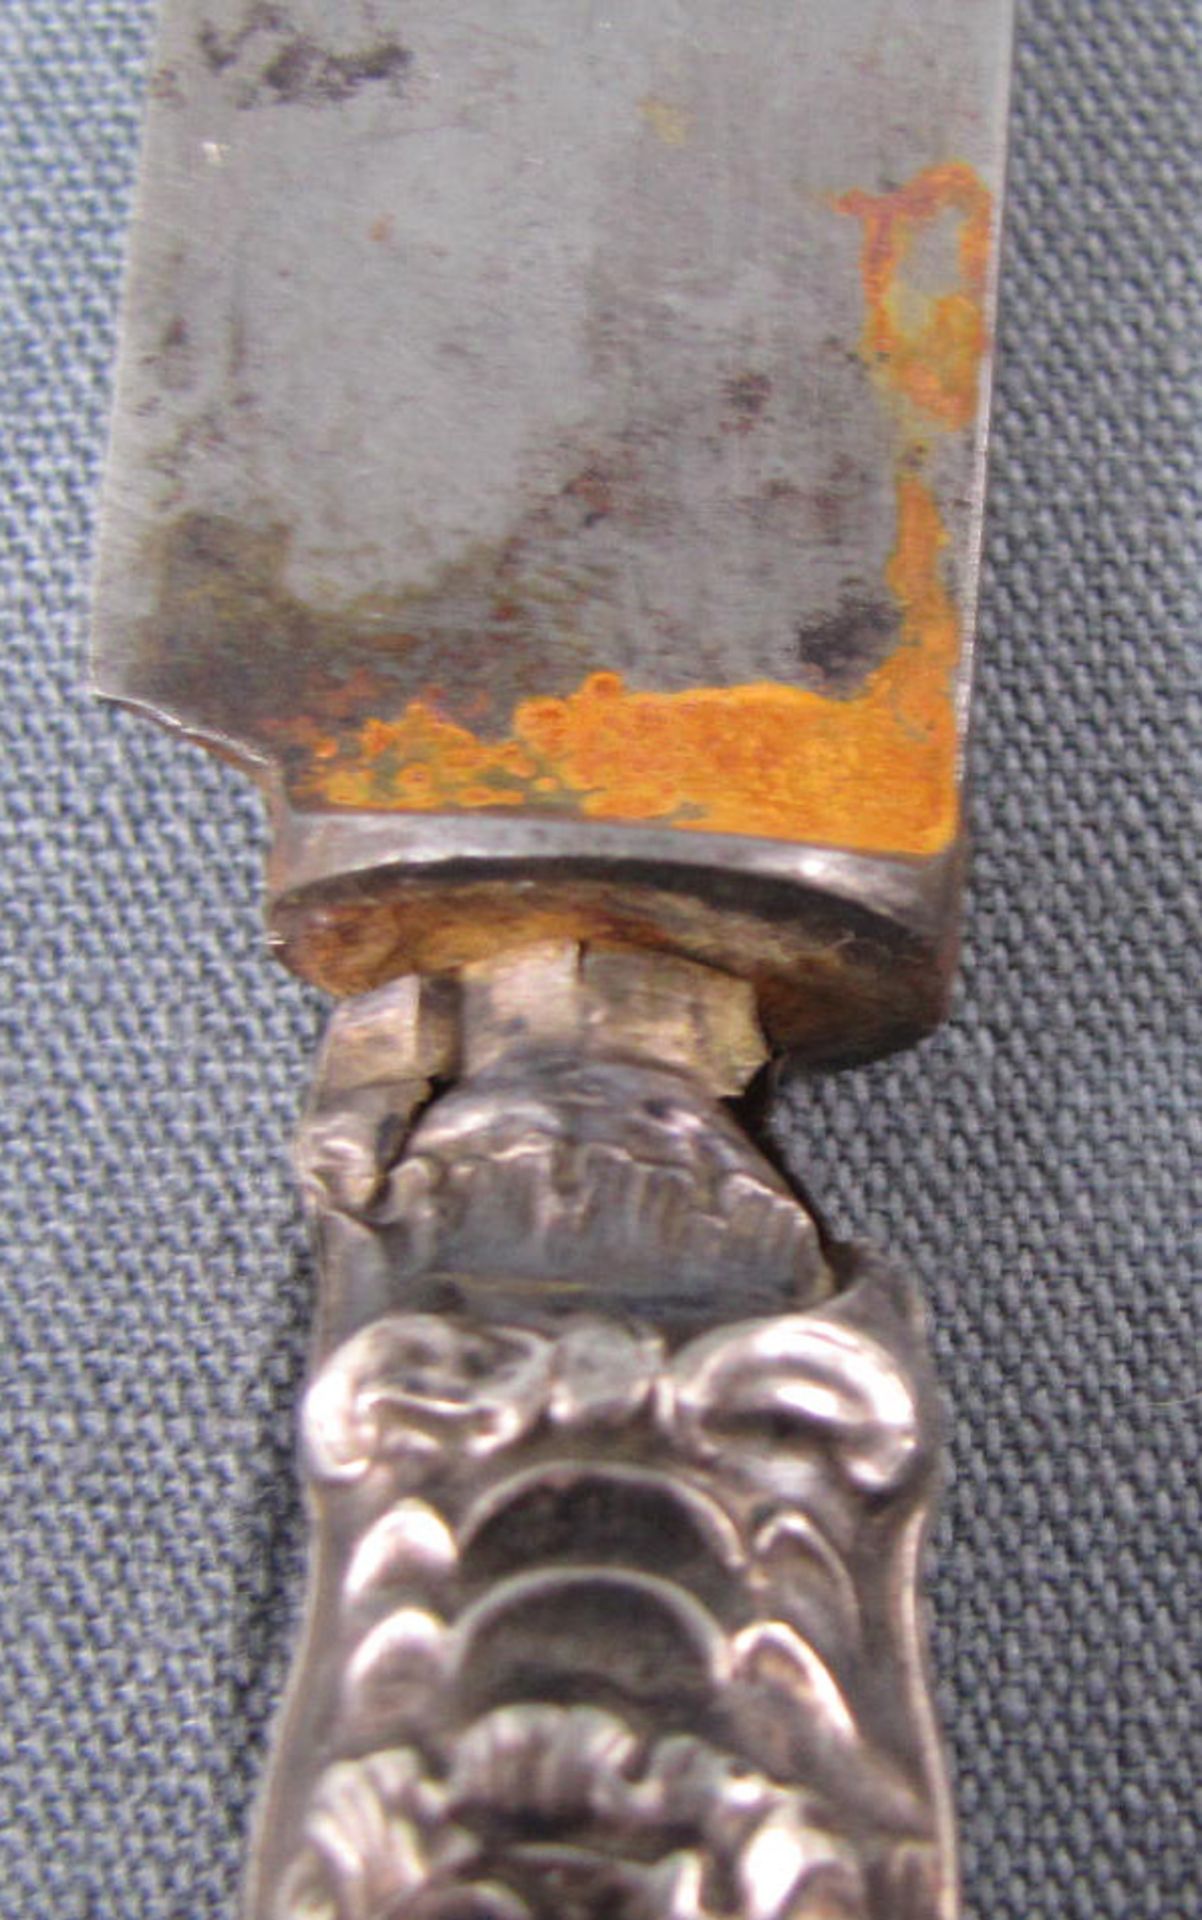 5 Teile Silber.Bis 21 cm. Messer, Gehstockknauf, Serviettenring, 2 Kammrücken.5 objects silver.Up to - Bild 2 aus 4